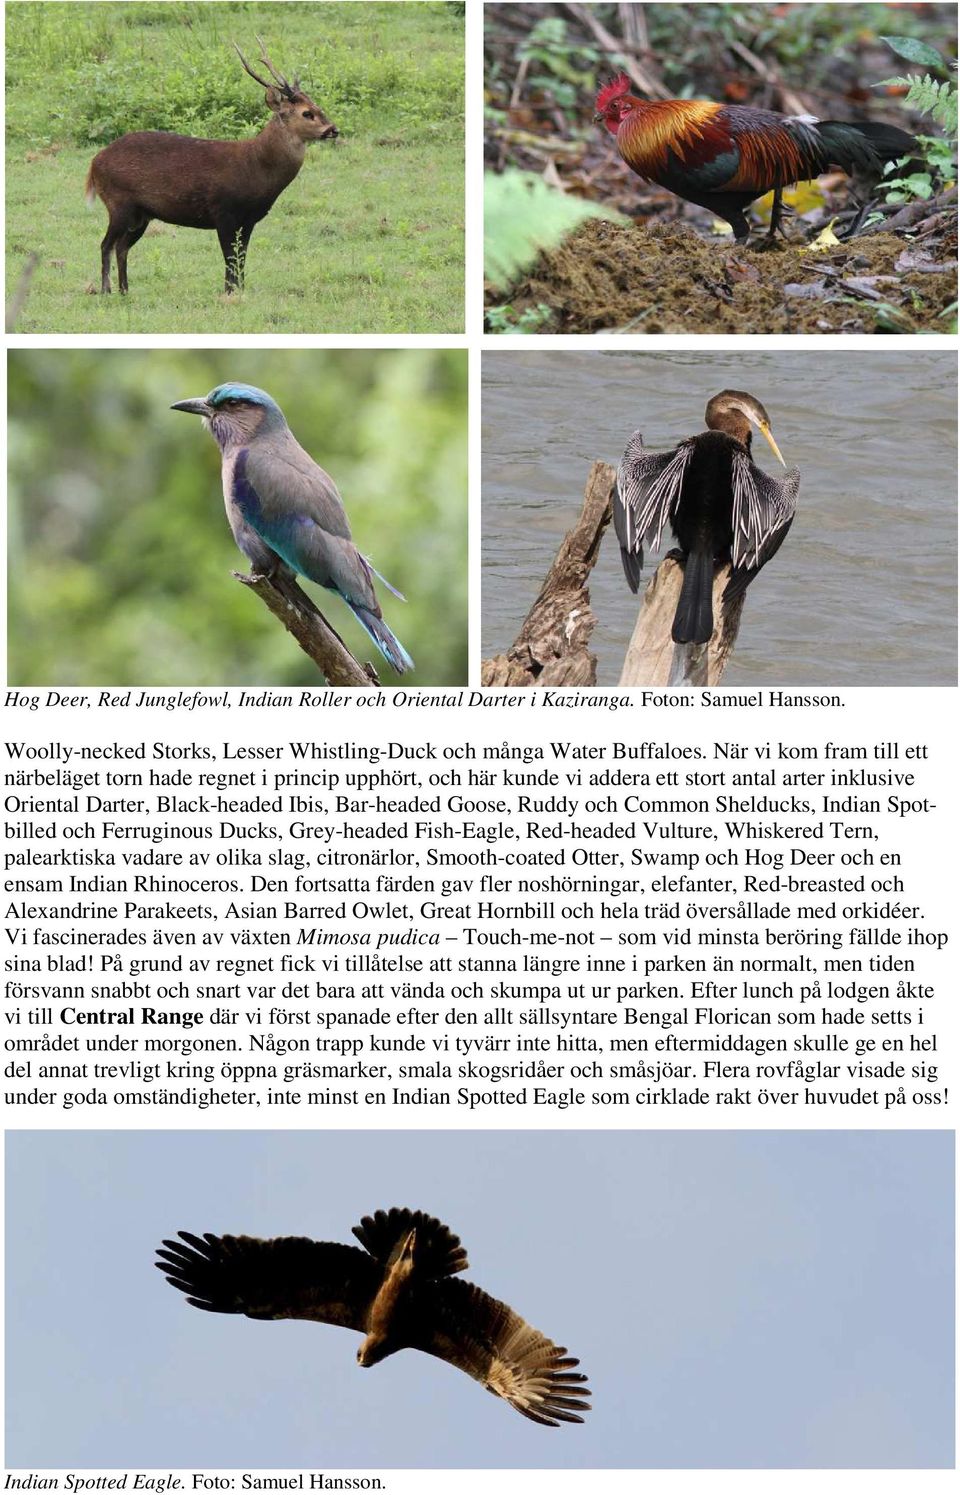 Shelducks, Indian Spotbilled och Ferruginous Ducks, Grey-headed Fish-Eagle, Red-headed Vulture, Whiskered Tern, palearktiska vadare av olika slag, citronärlor, Smooth-coated Otter, Swamp och Hog Deer